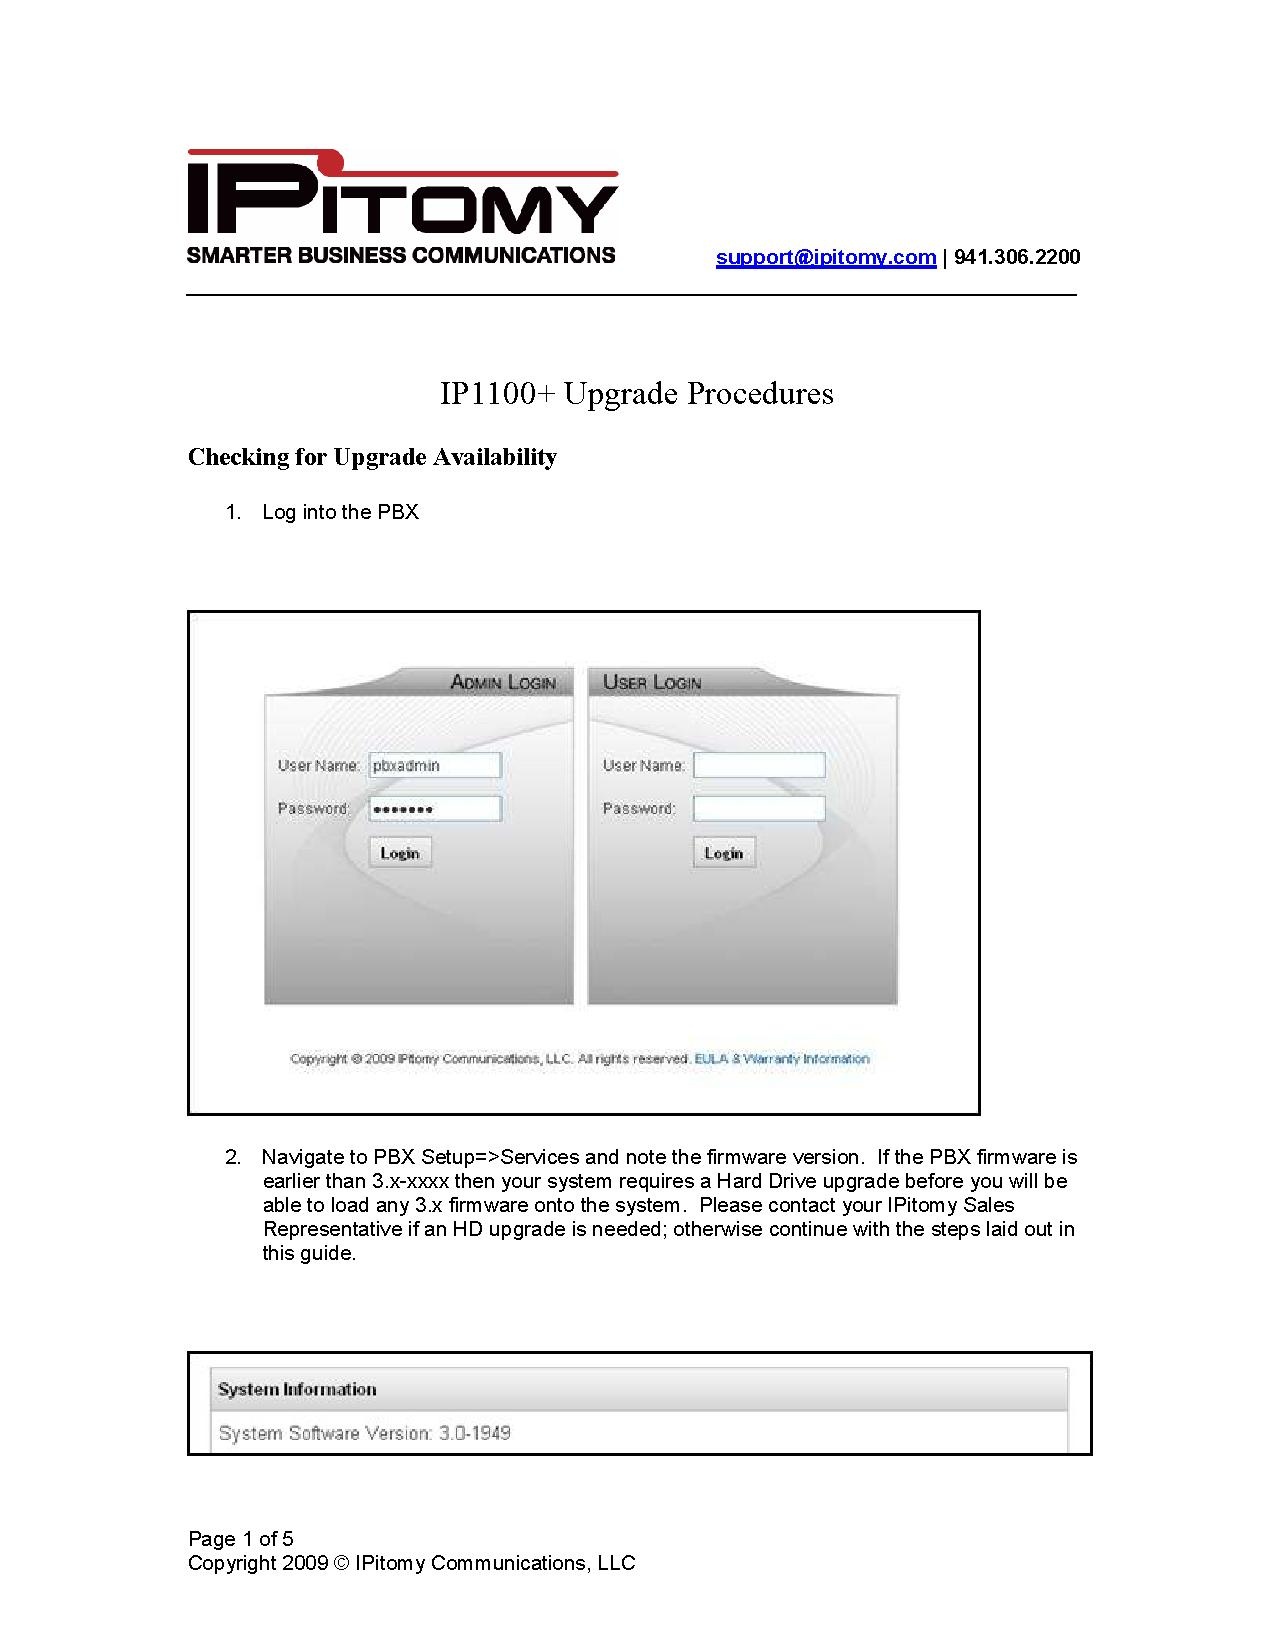 IP1100+ Upgrade Guide.pdf